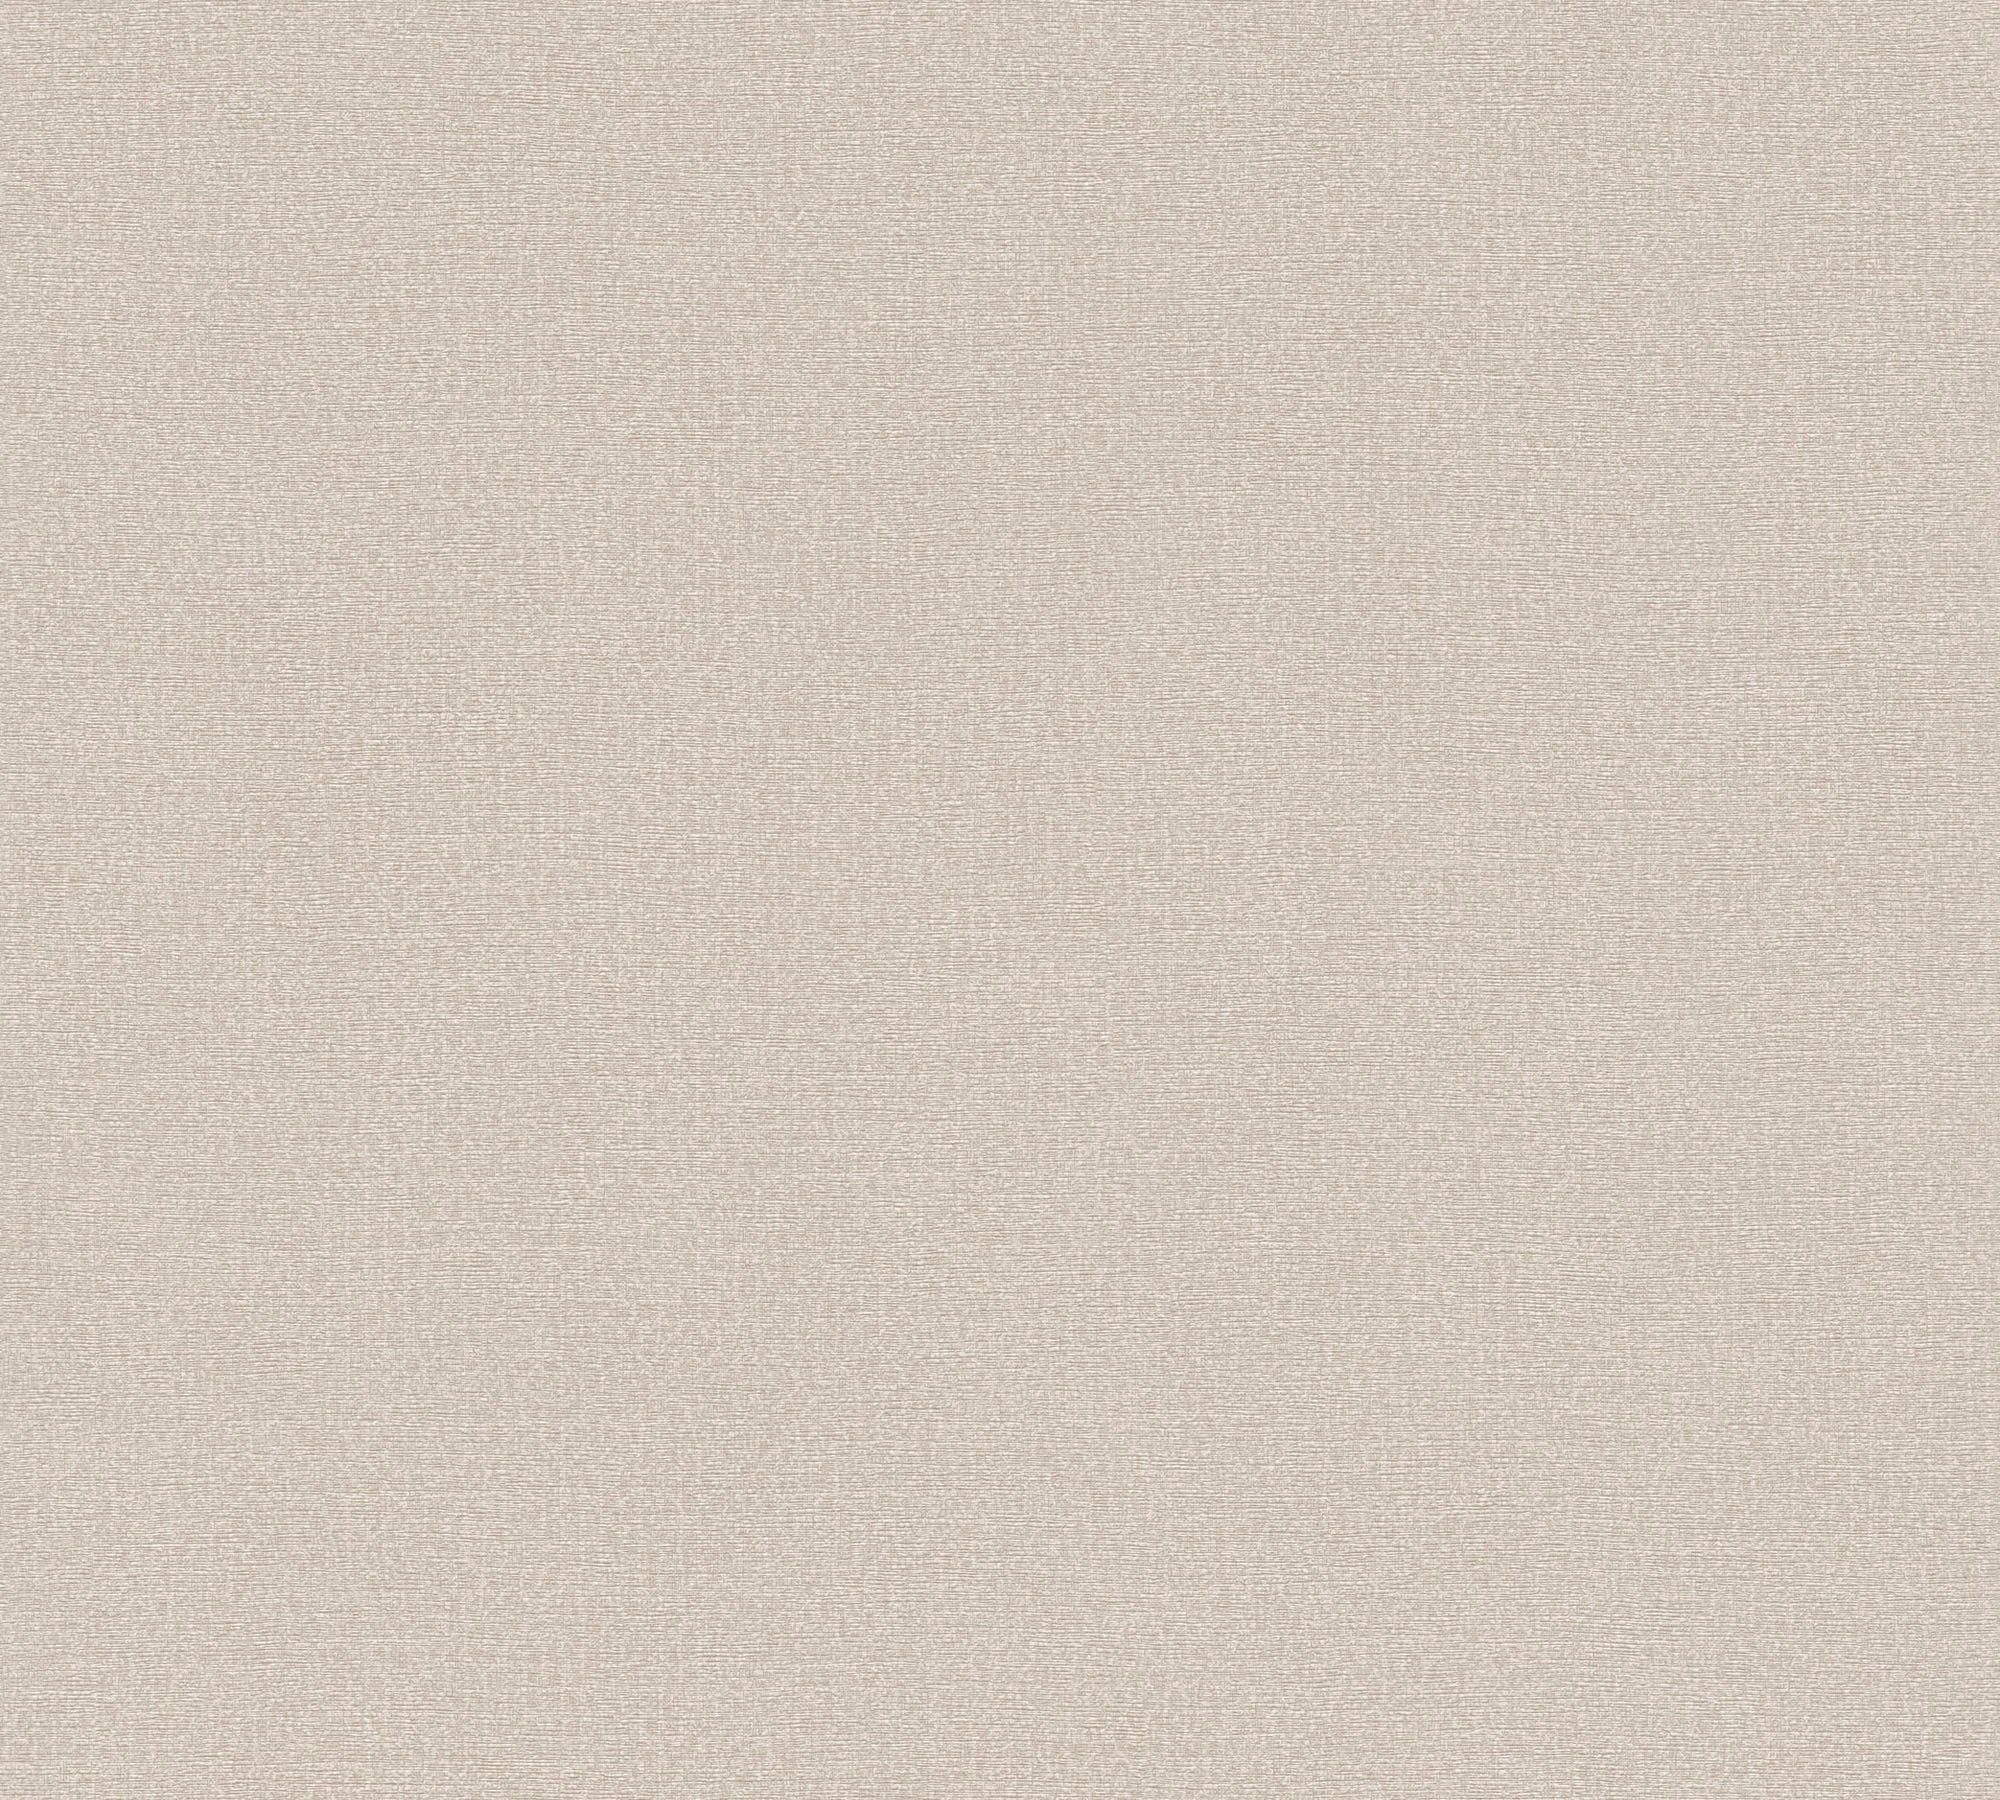 A.S. Vliestapete Tapete leicht Beige,Grau Textiloptik, (1 Uni, St), Wand Vlies, Création glänzend, Natural strukturiert, Living leicht